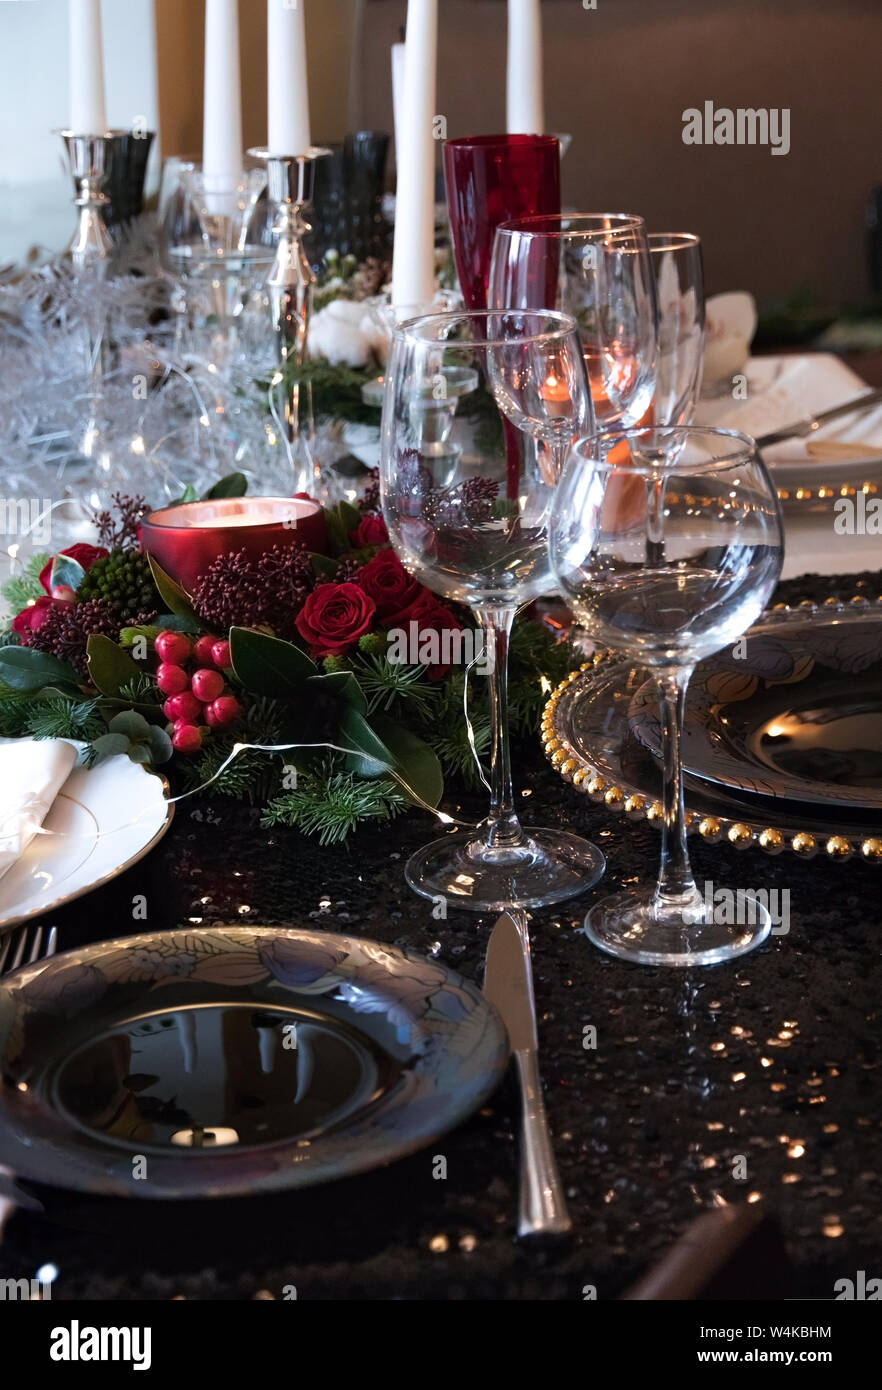 Composition de Noël branches de sapin, des baies et des bougies sur la  table. Réglage de la table de fête pour le dîner de Noël sur une nappe noire  brillante et ex